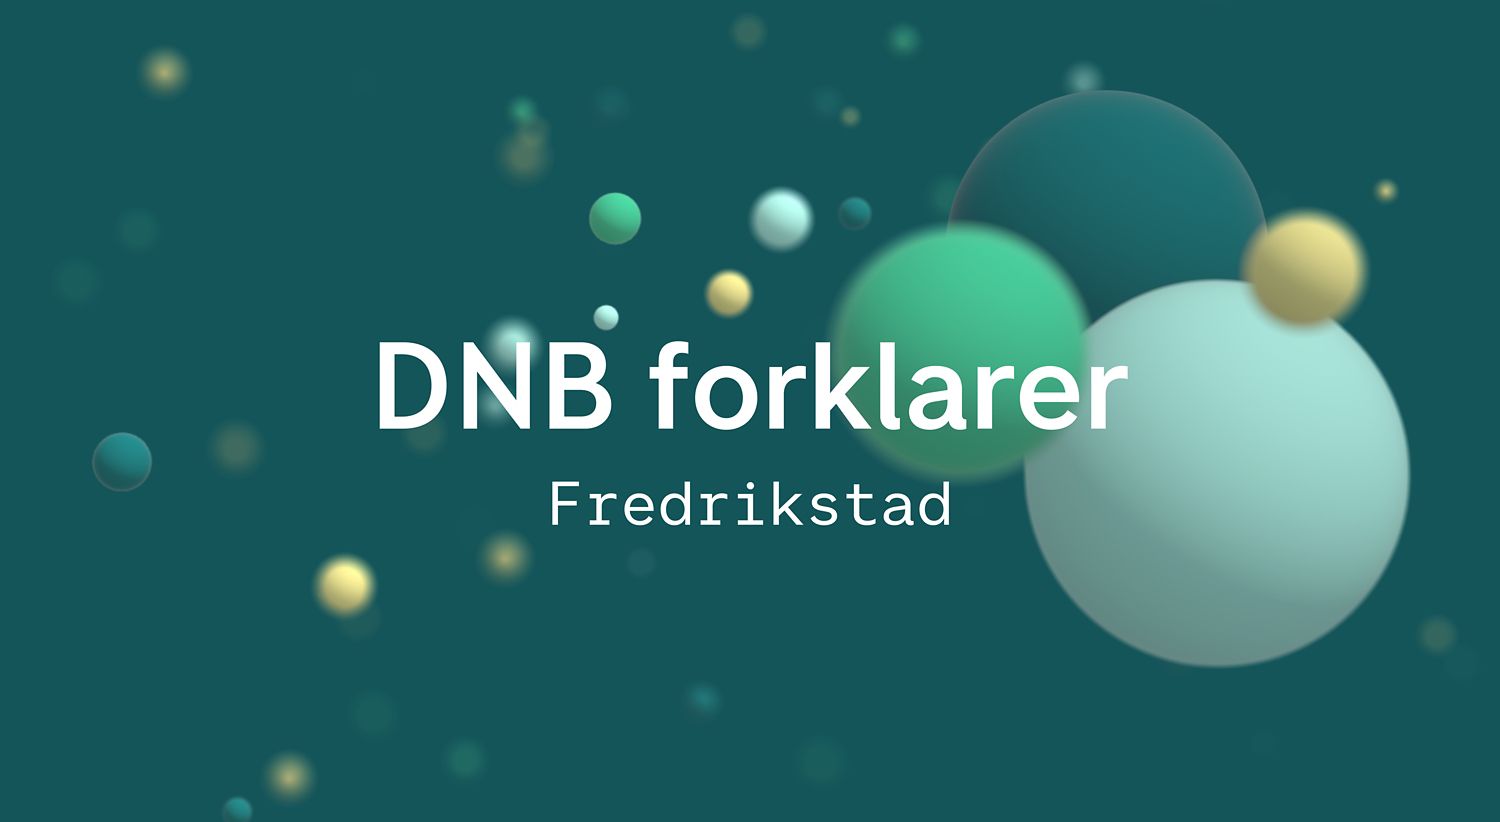 DNB forklarer Fredrikstad smaragd.jpg